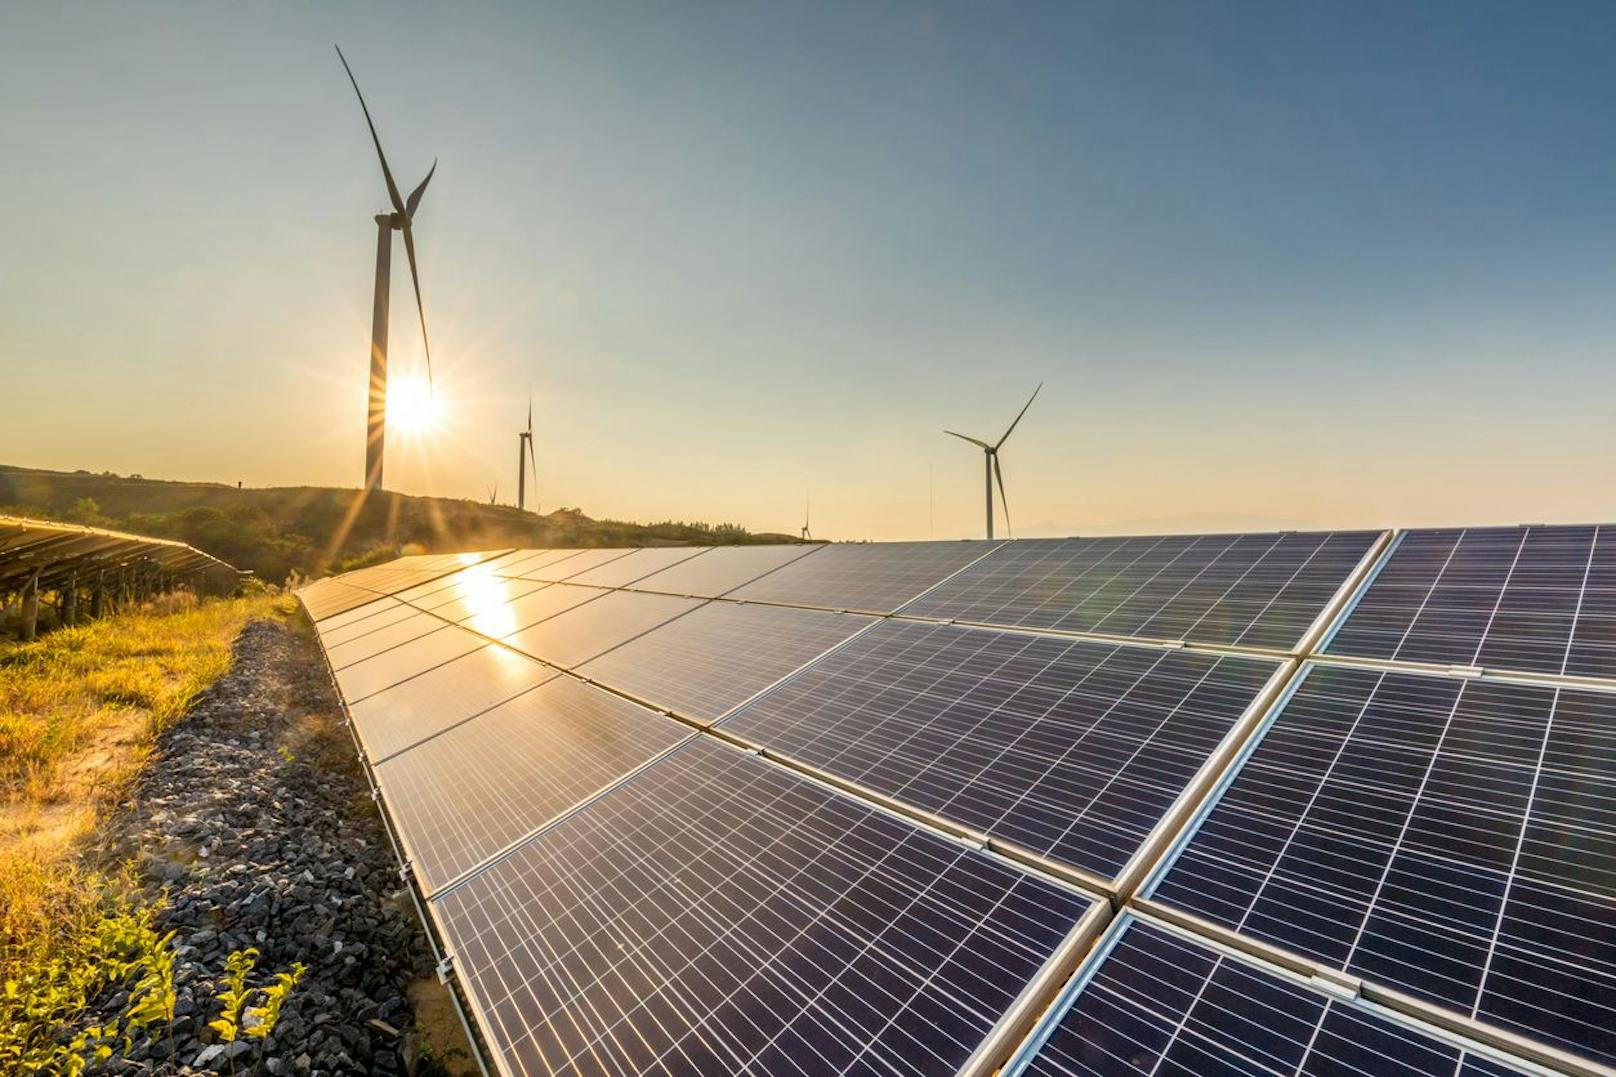 Bis 2030 will Oberösterreich den Photovoltaik-Ausbau kräftig fördern: Das große Ziel lautet, die Energiegewinnung aus Sonnenkraft zu verzehnfachen.